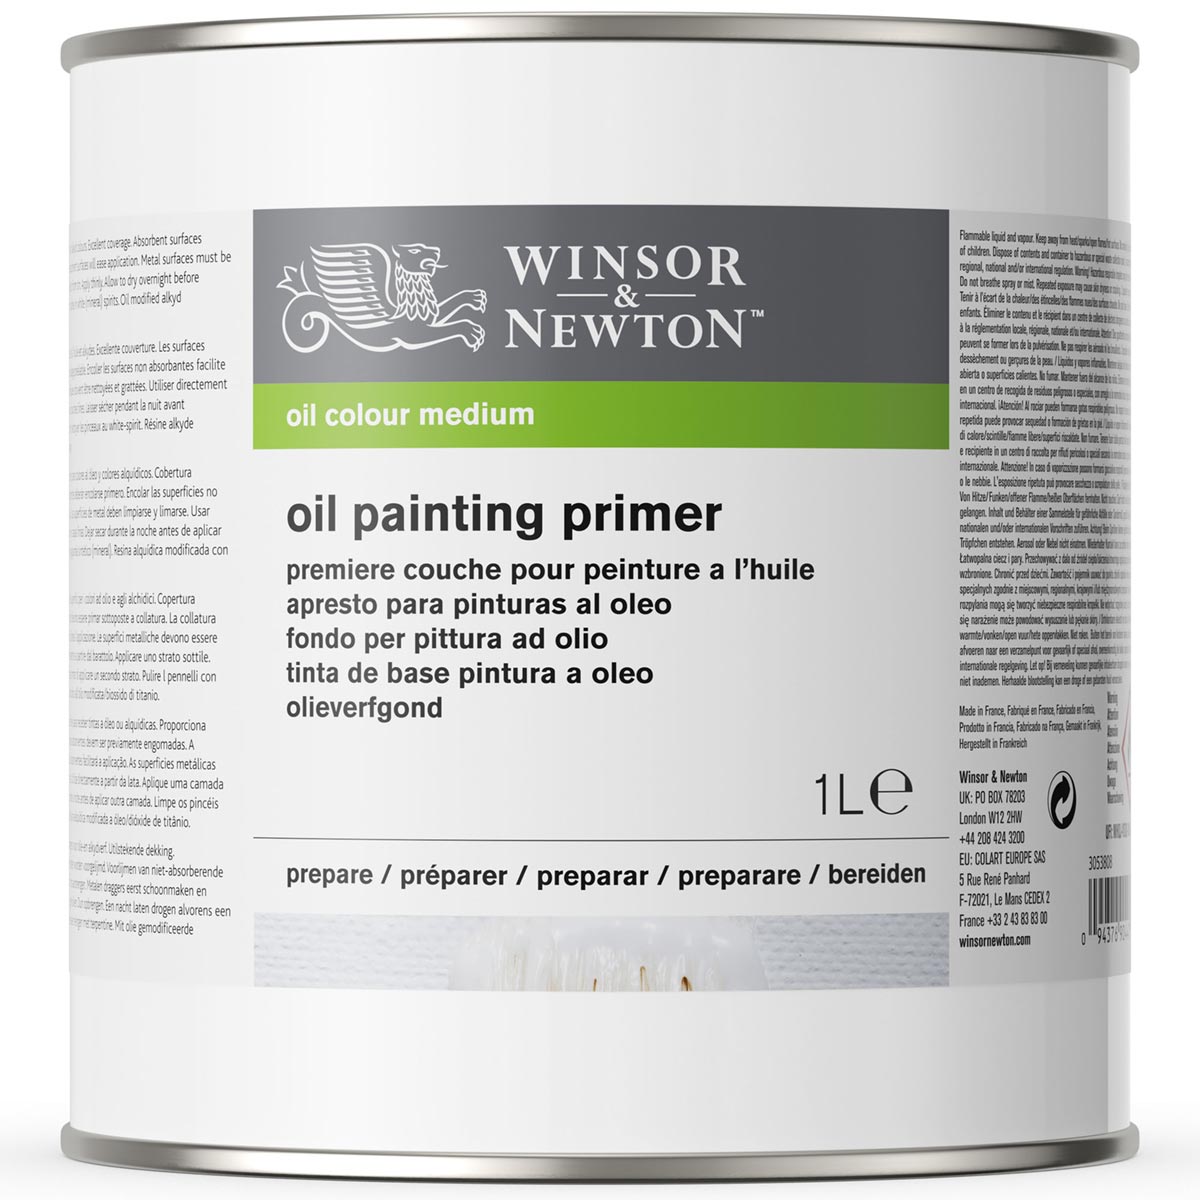 Winsor und Newton - Ölmalerei Primer - 1 Liter